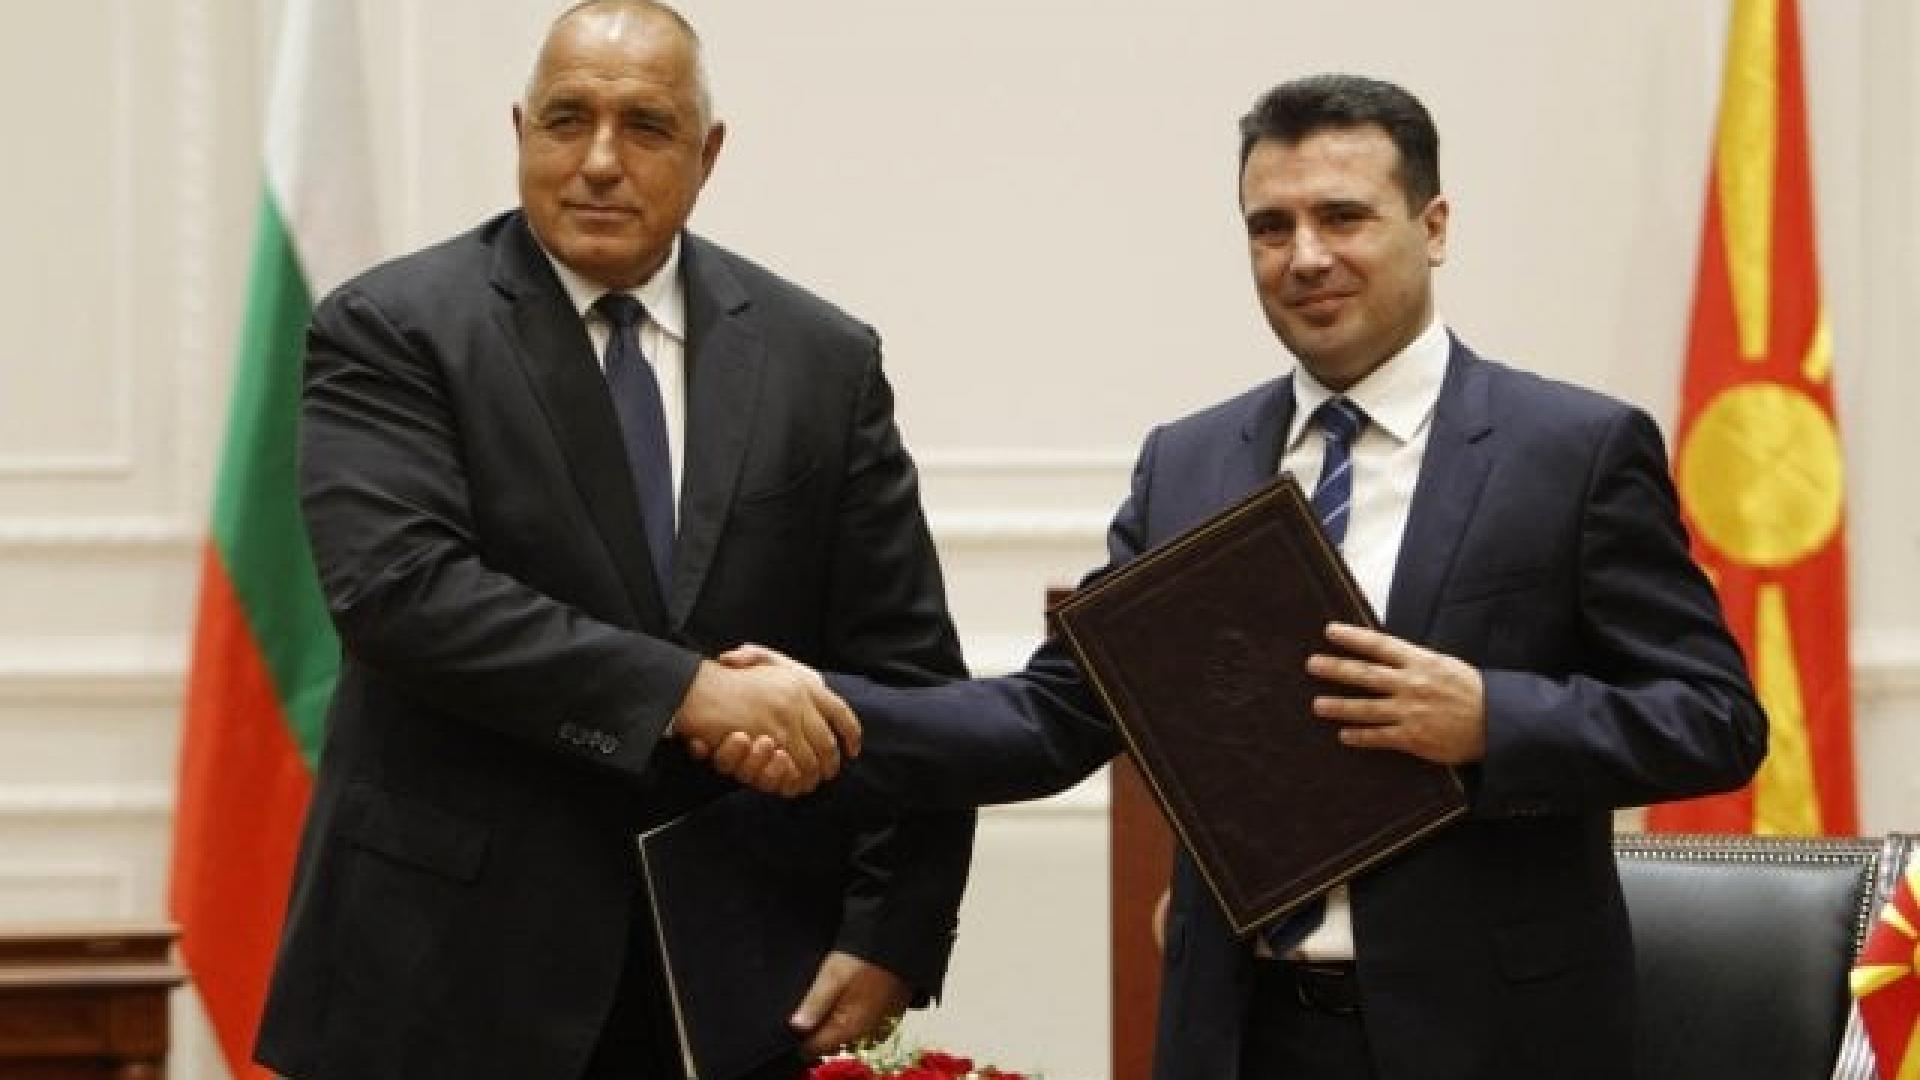 Бившият македонски премиер Зоран Заев лично благодари на лидера на